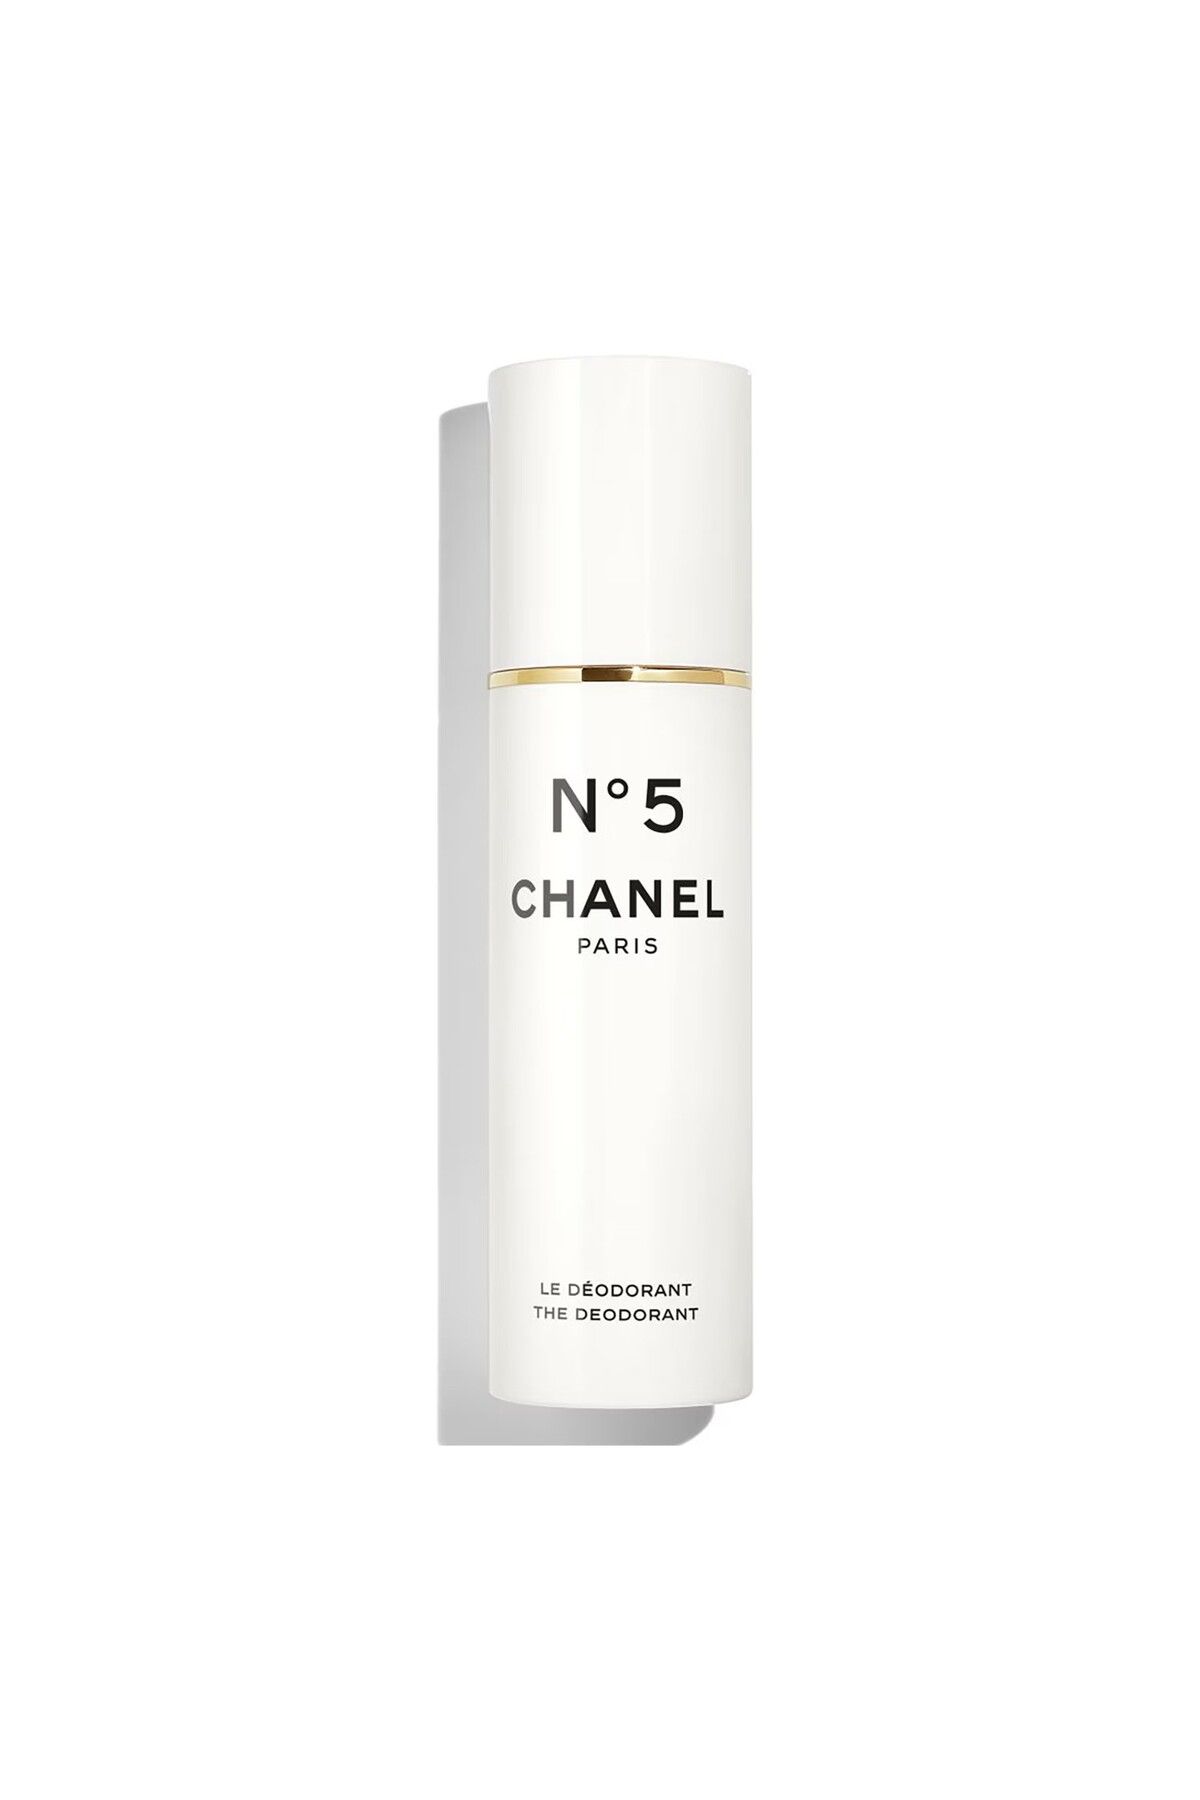 Chanel N°5 - Kadınlar İçin Yoğun Çiçeksi Notaları İçeren Ferahlatıcı Mist Sprey Deodorant 100 ml